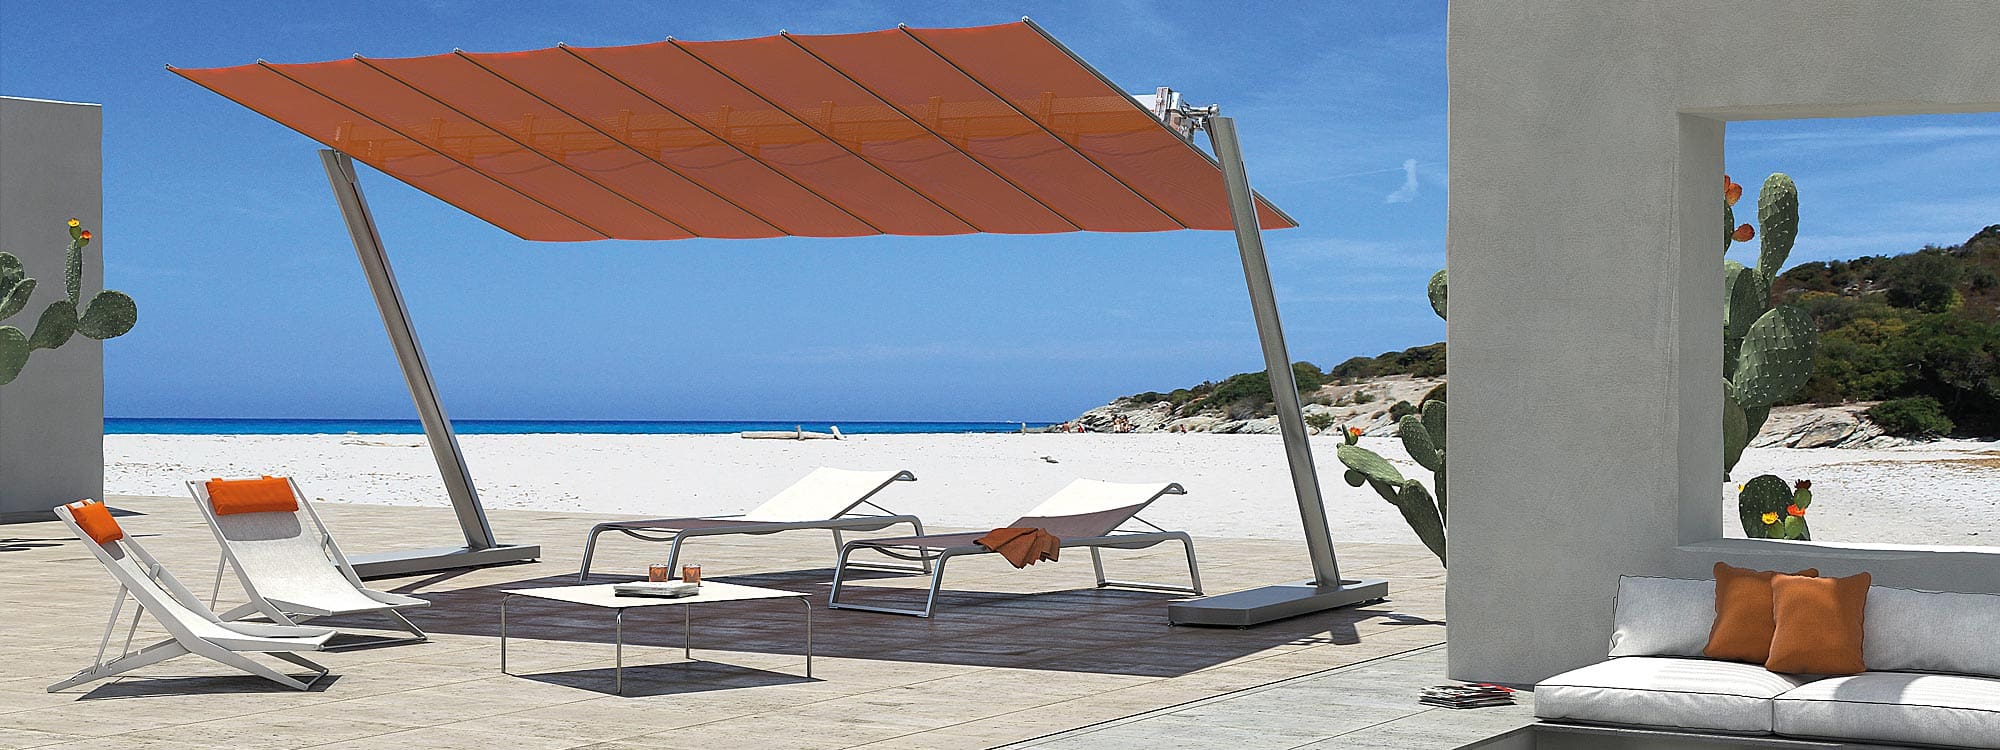 Capri Cantilever Parasol  FIM Luxury Italian Sunshades